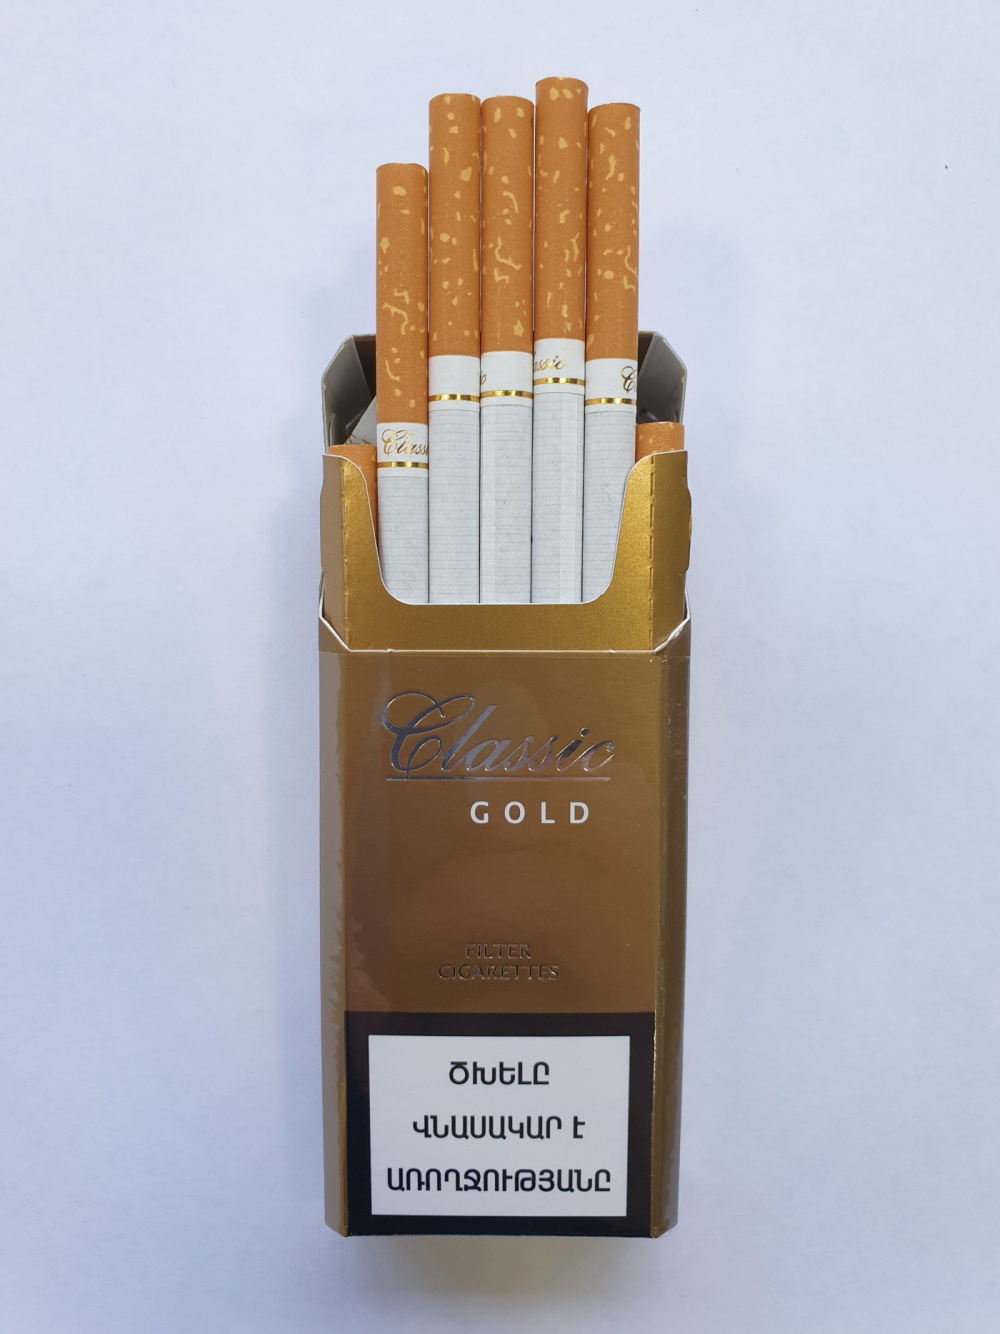 Где Купить Хорошие Сигареты